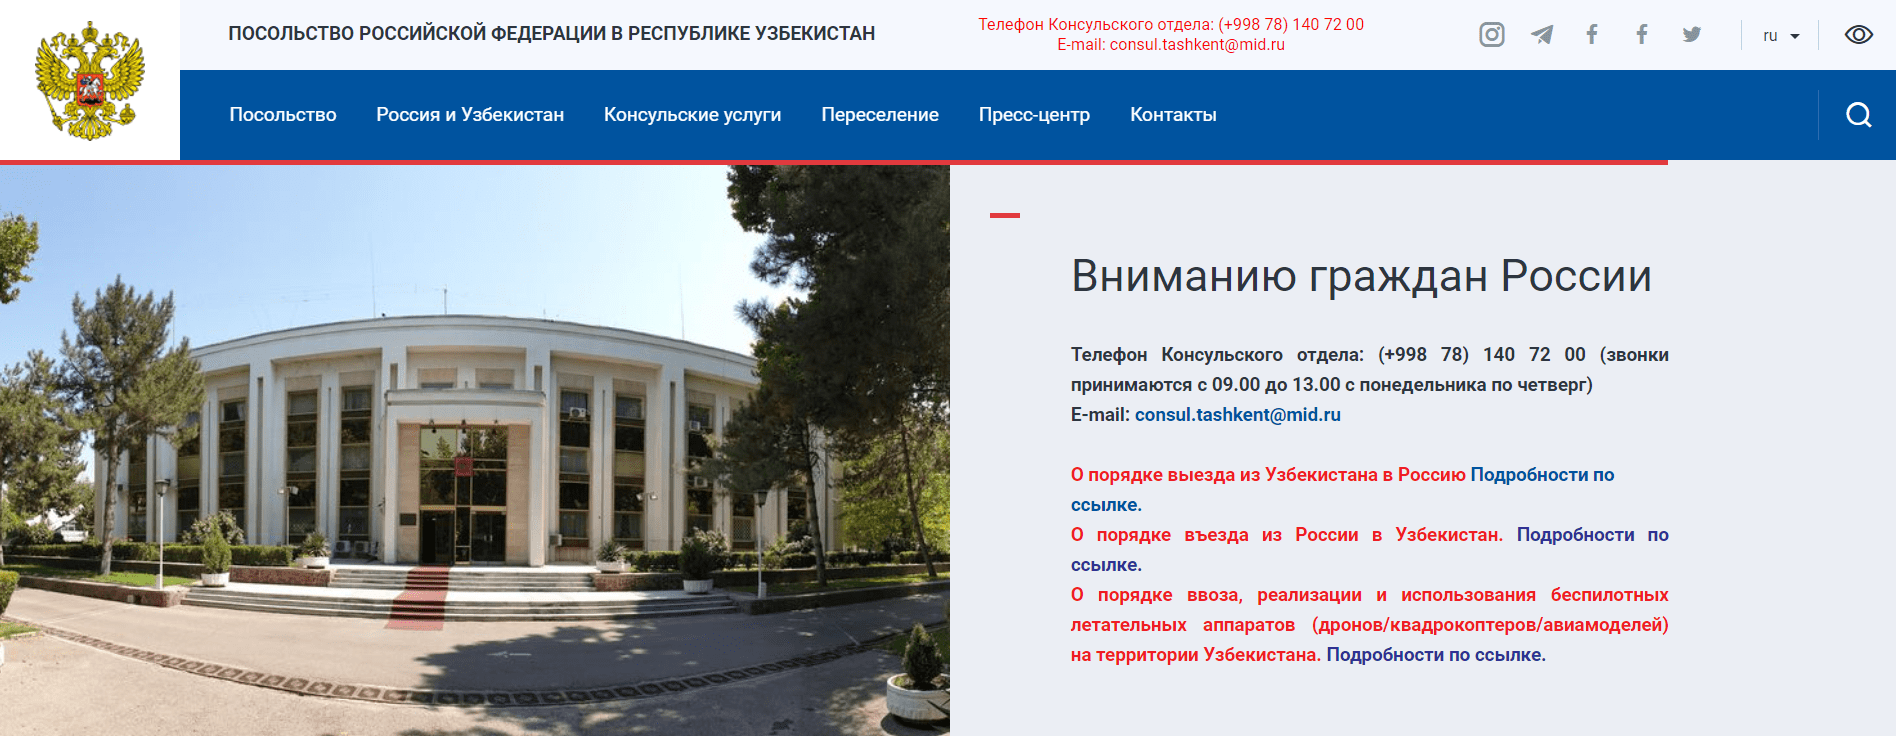 Uzbekistan.mid.ru – официальный сайт, запись на прием